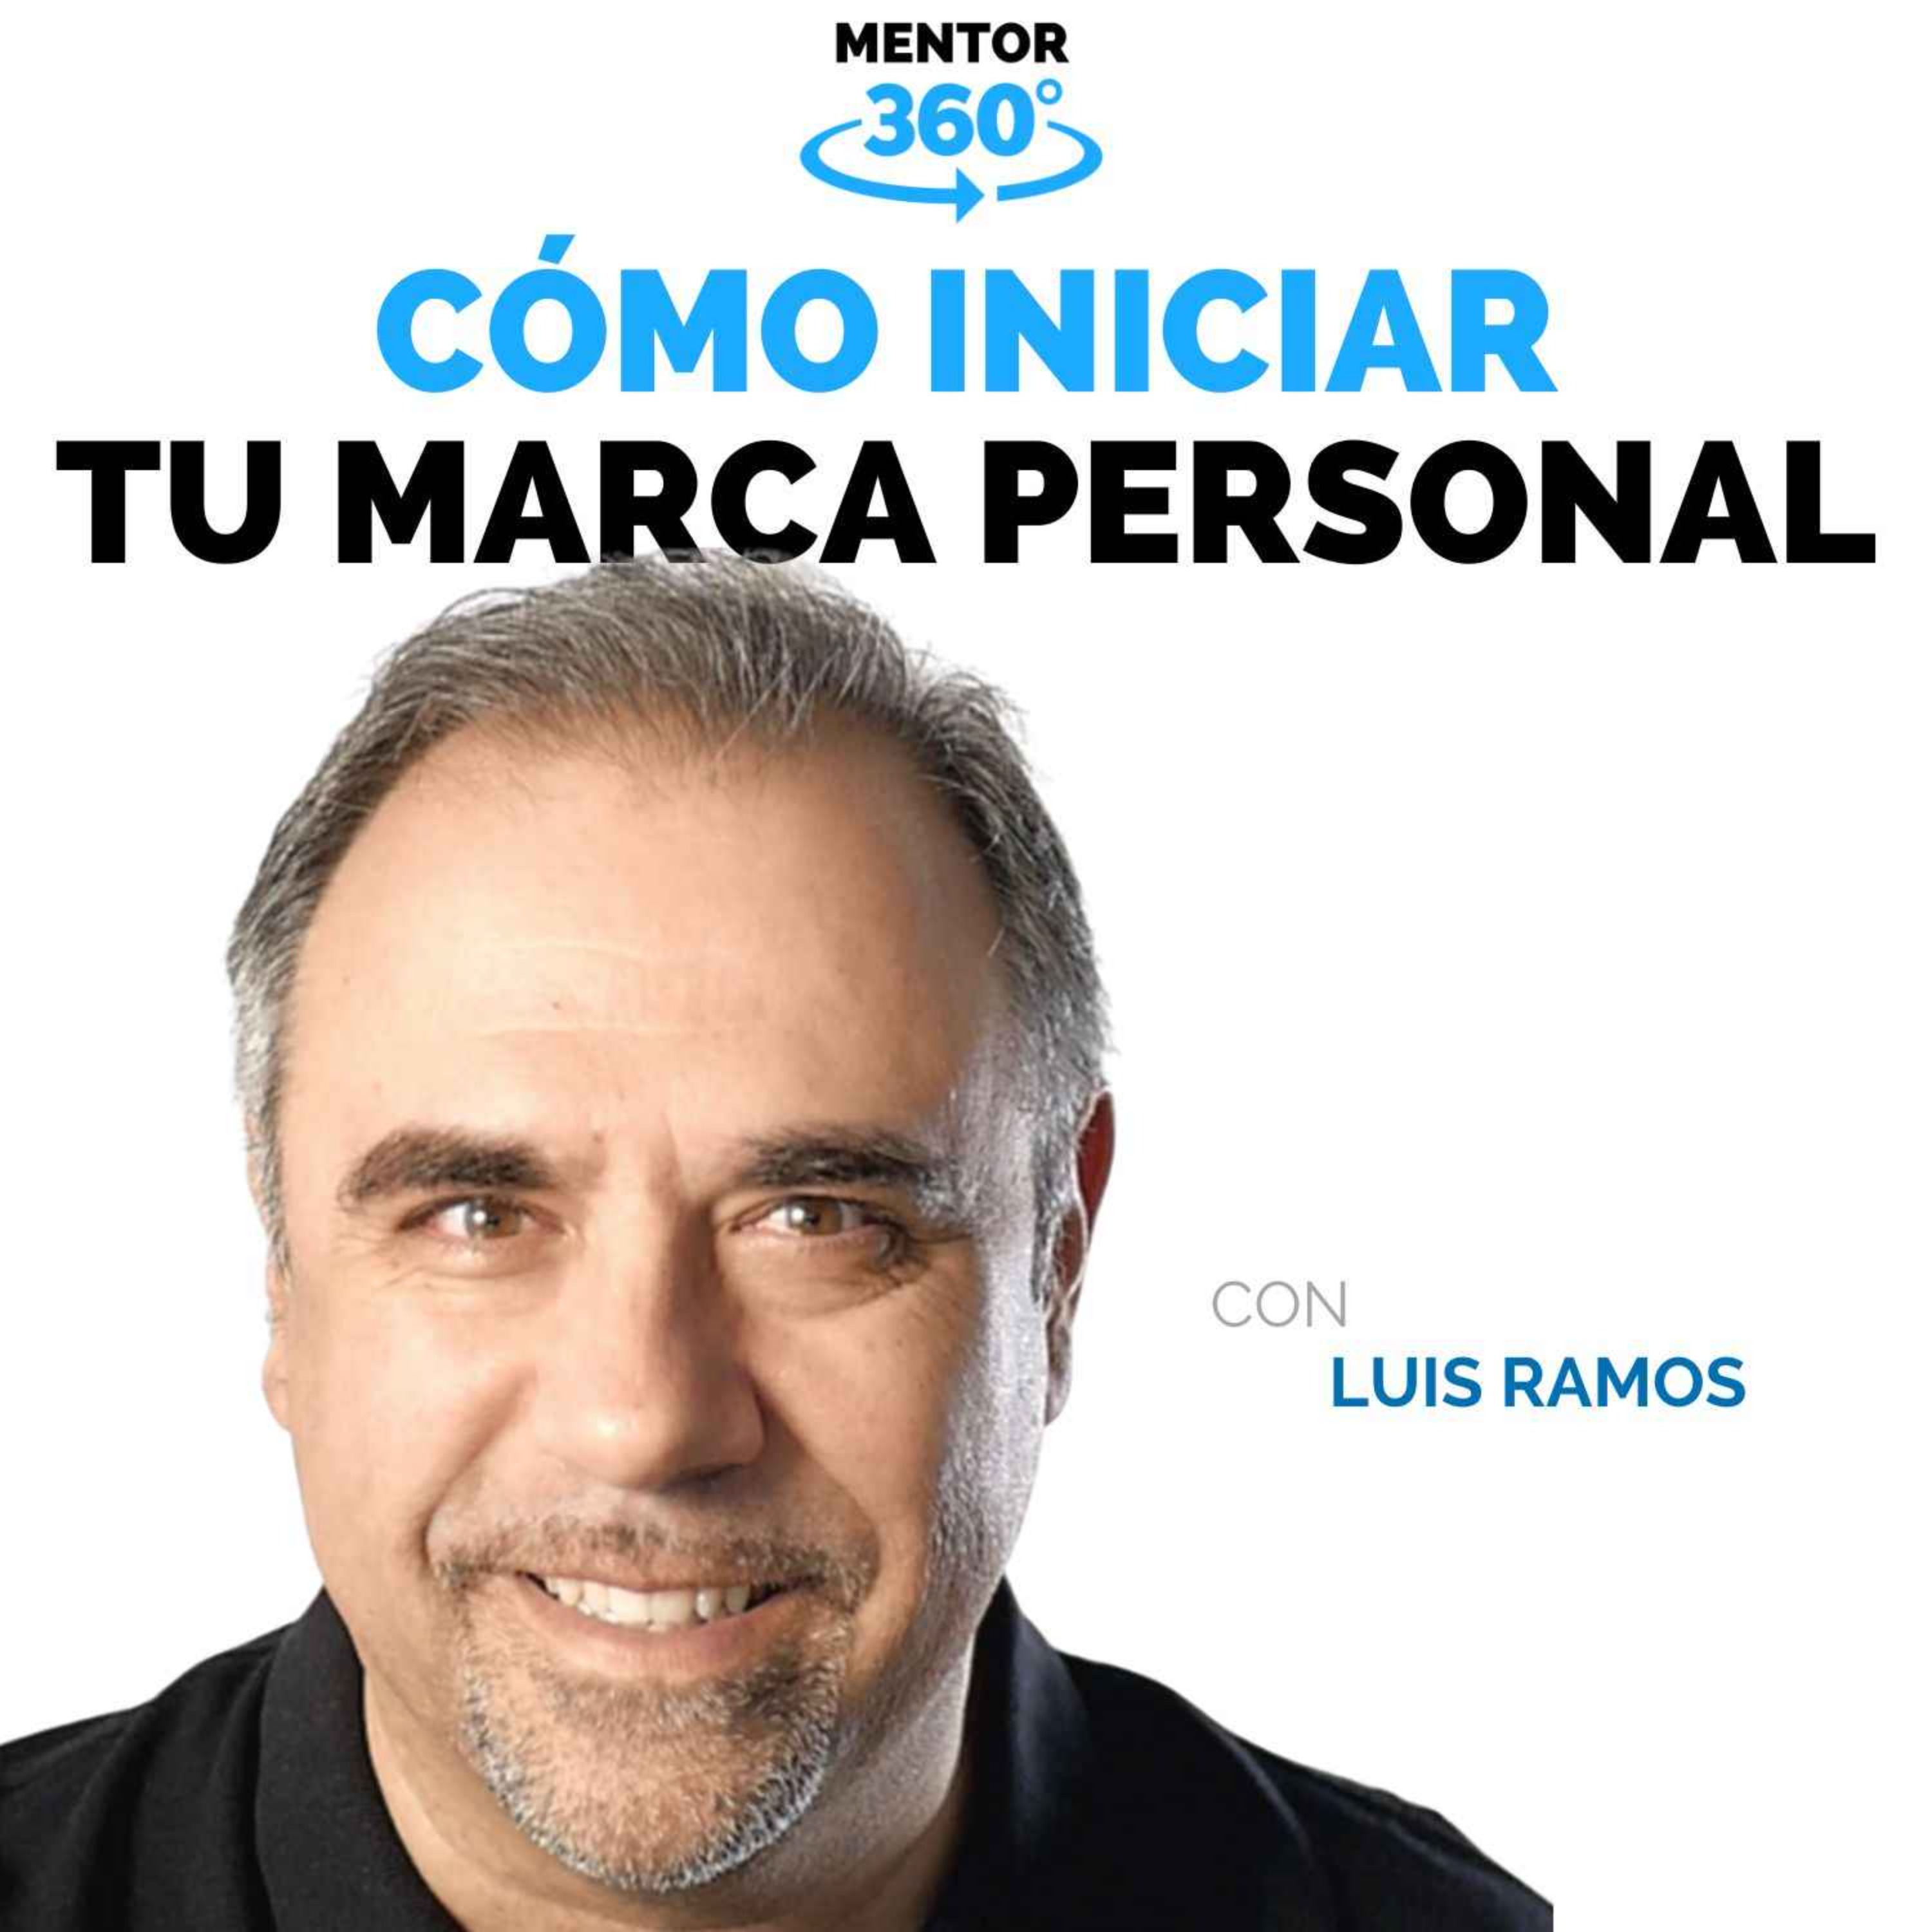 Cómo Iniciar Tu Marca Personal - Luis Ramos - Marca Personal - MENTOR360